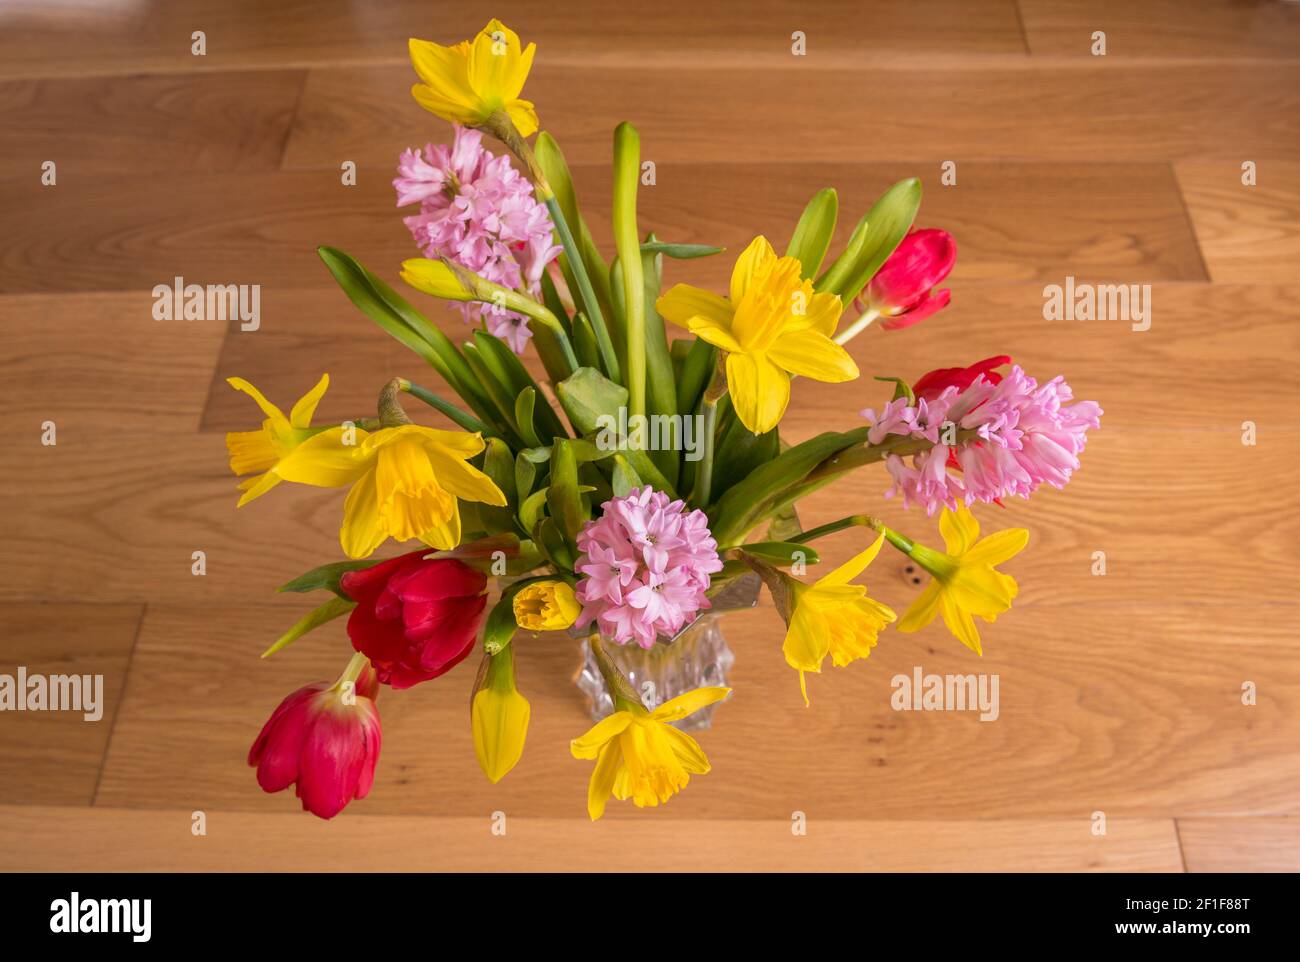 Un arrangement de fleurs coupées, tulipes, jonquilles et jacinthe dans un vase en verre sur un plancher laminé en bois. Banque D'Images